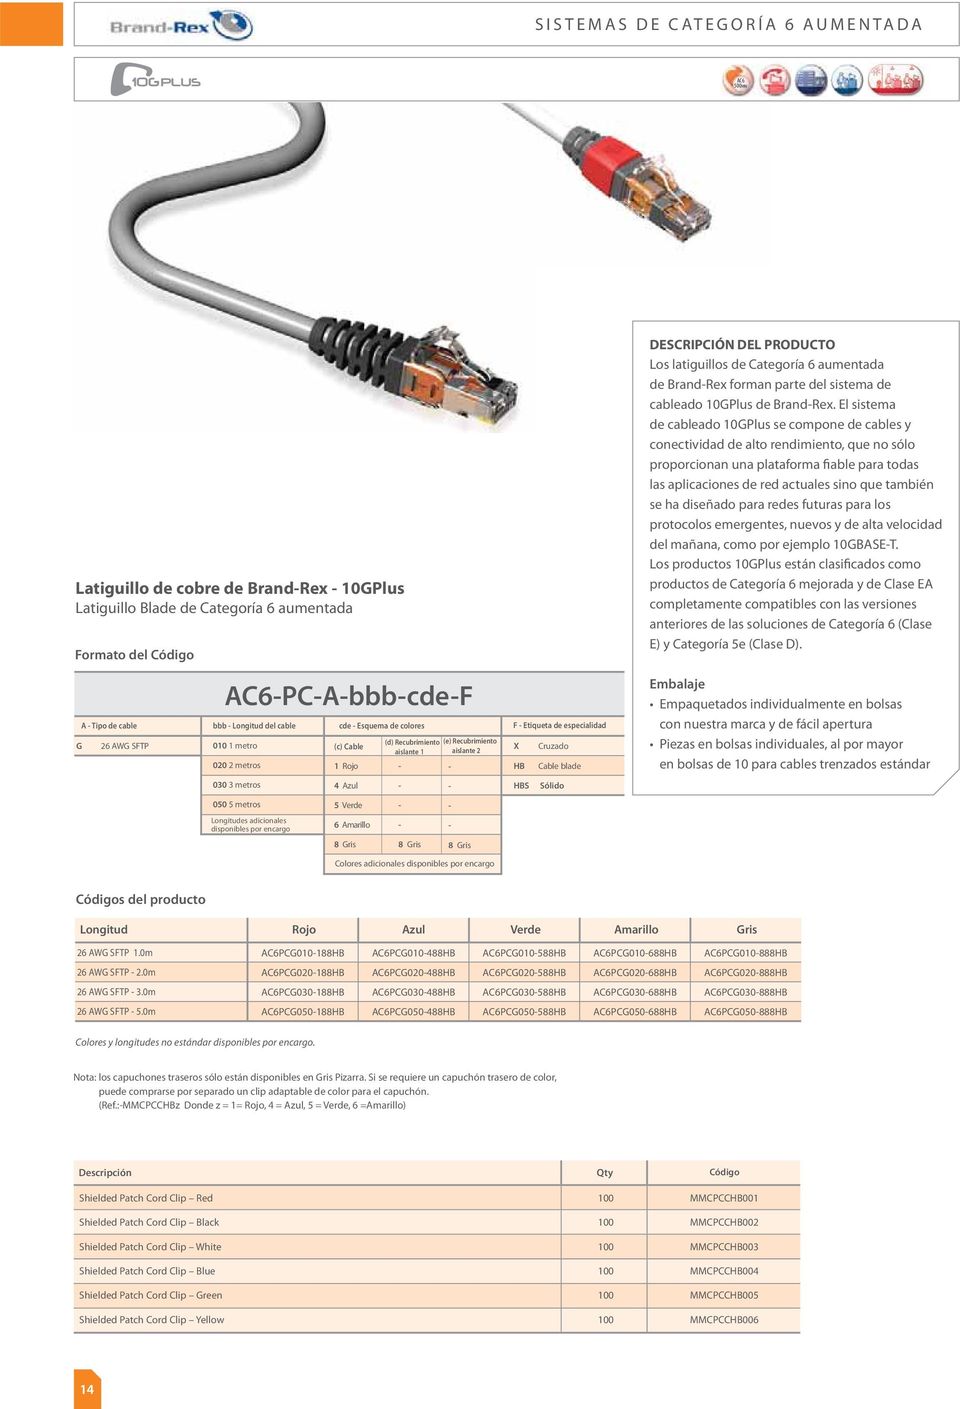 Cable blade HBS Sólido Los latiguillos de Categoría 6 aumentada de BrandRex forman parte del sistema de cableado 10GPlus de BrandRex.